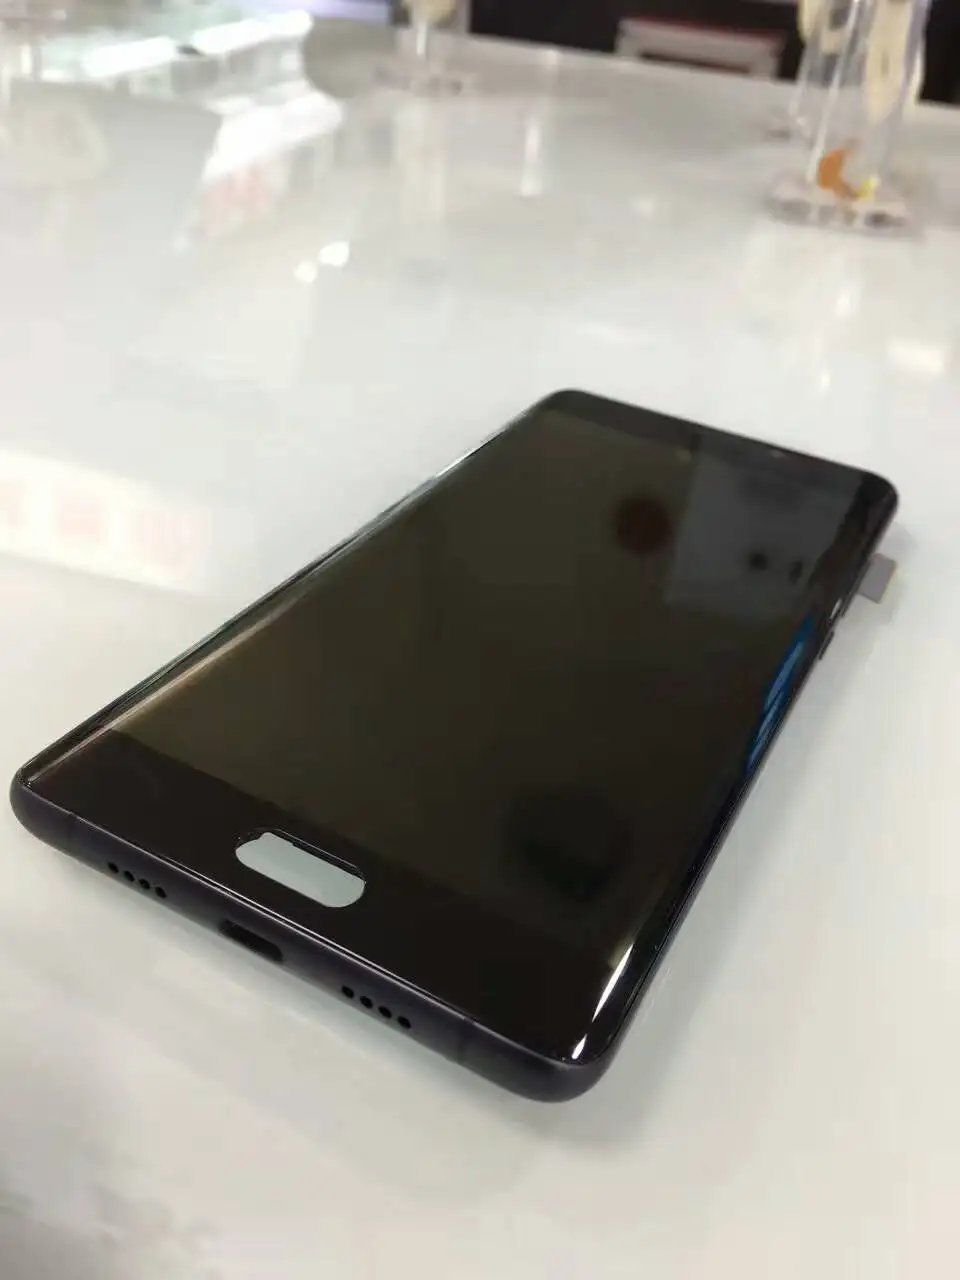 AMOLED для Xiaomi mi Note 2 mi note2 ЖК-дисплей 5,7 дюймов кодирующий преобразователь сенсорного экрана в сборе рамка+ Инструменты